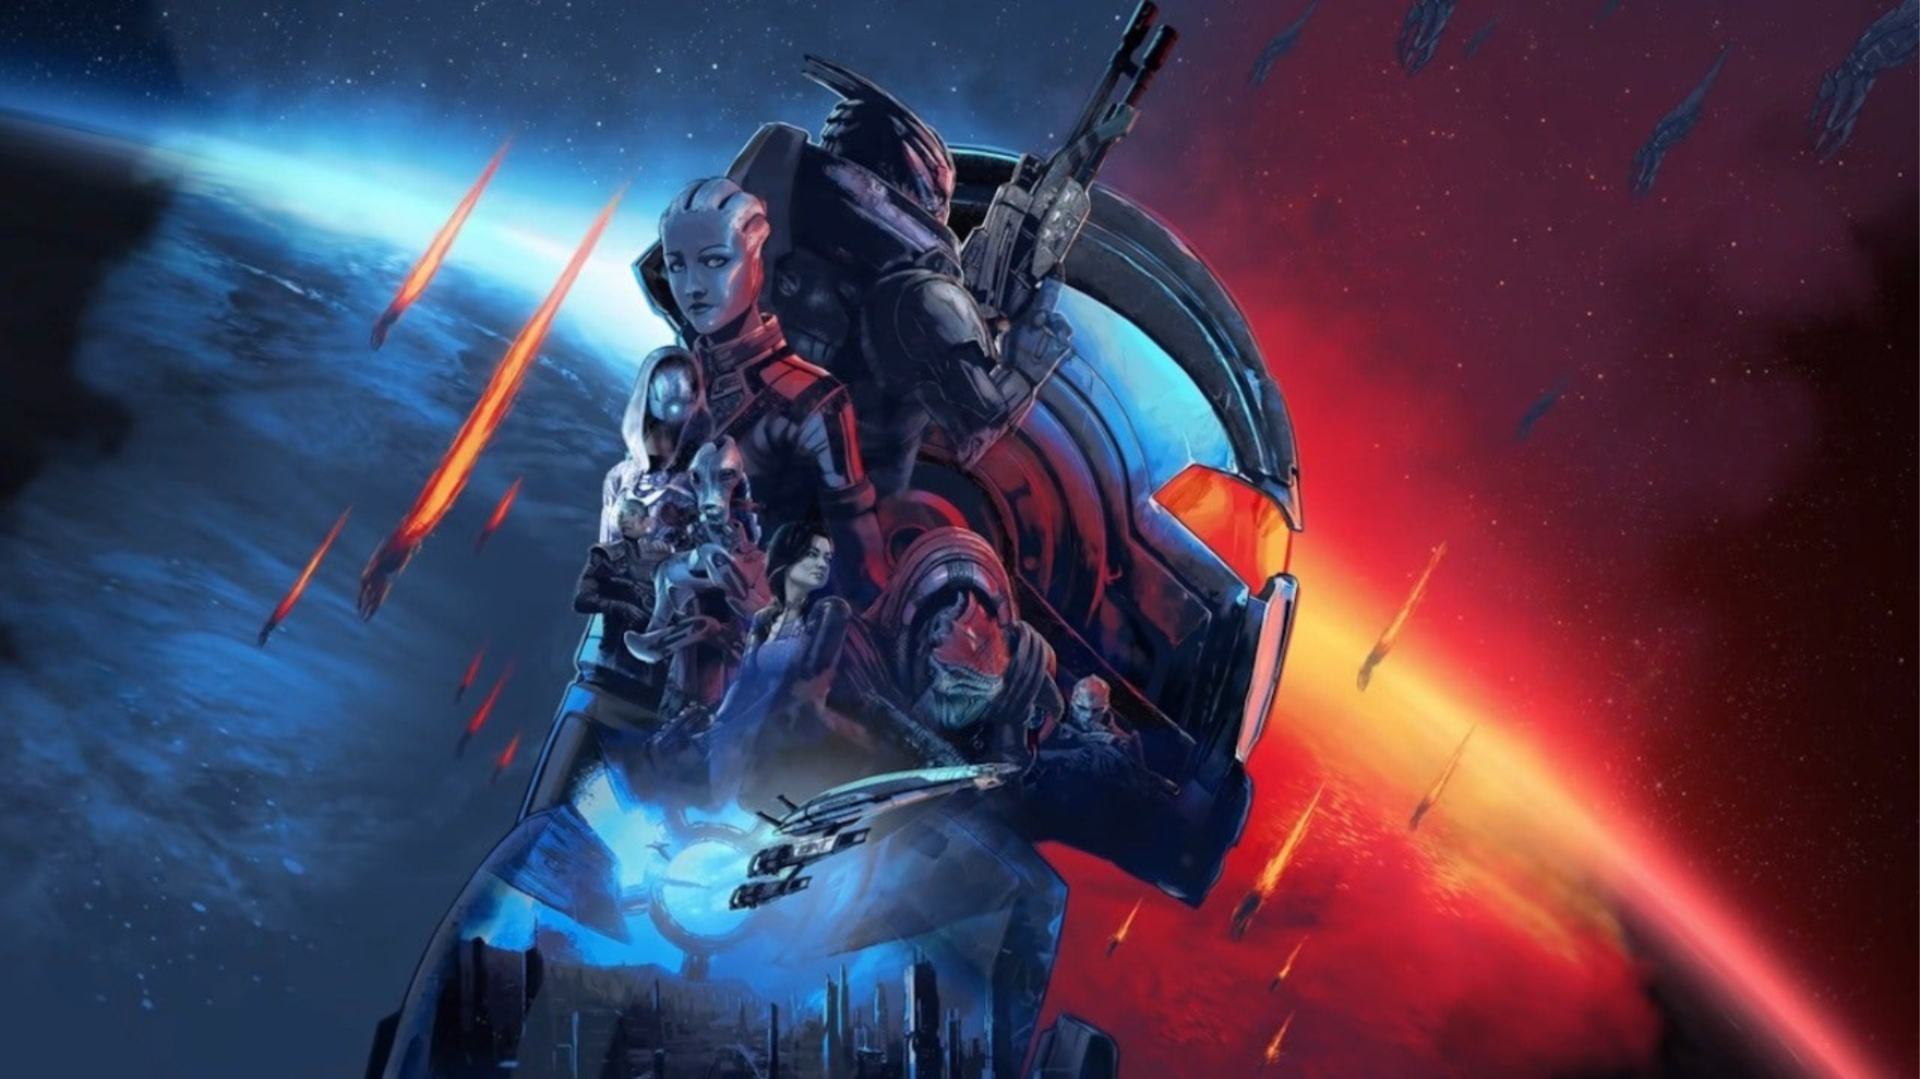 Arte promocional e colagem do elenco principal da trilogia original de Mass Effect para a remasterização da Legendary Edition.